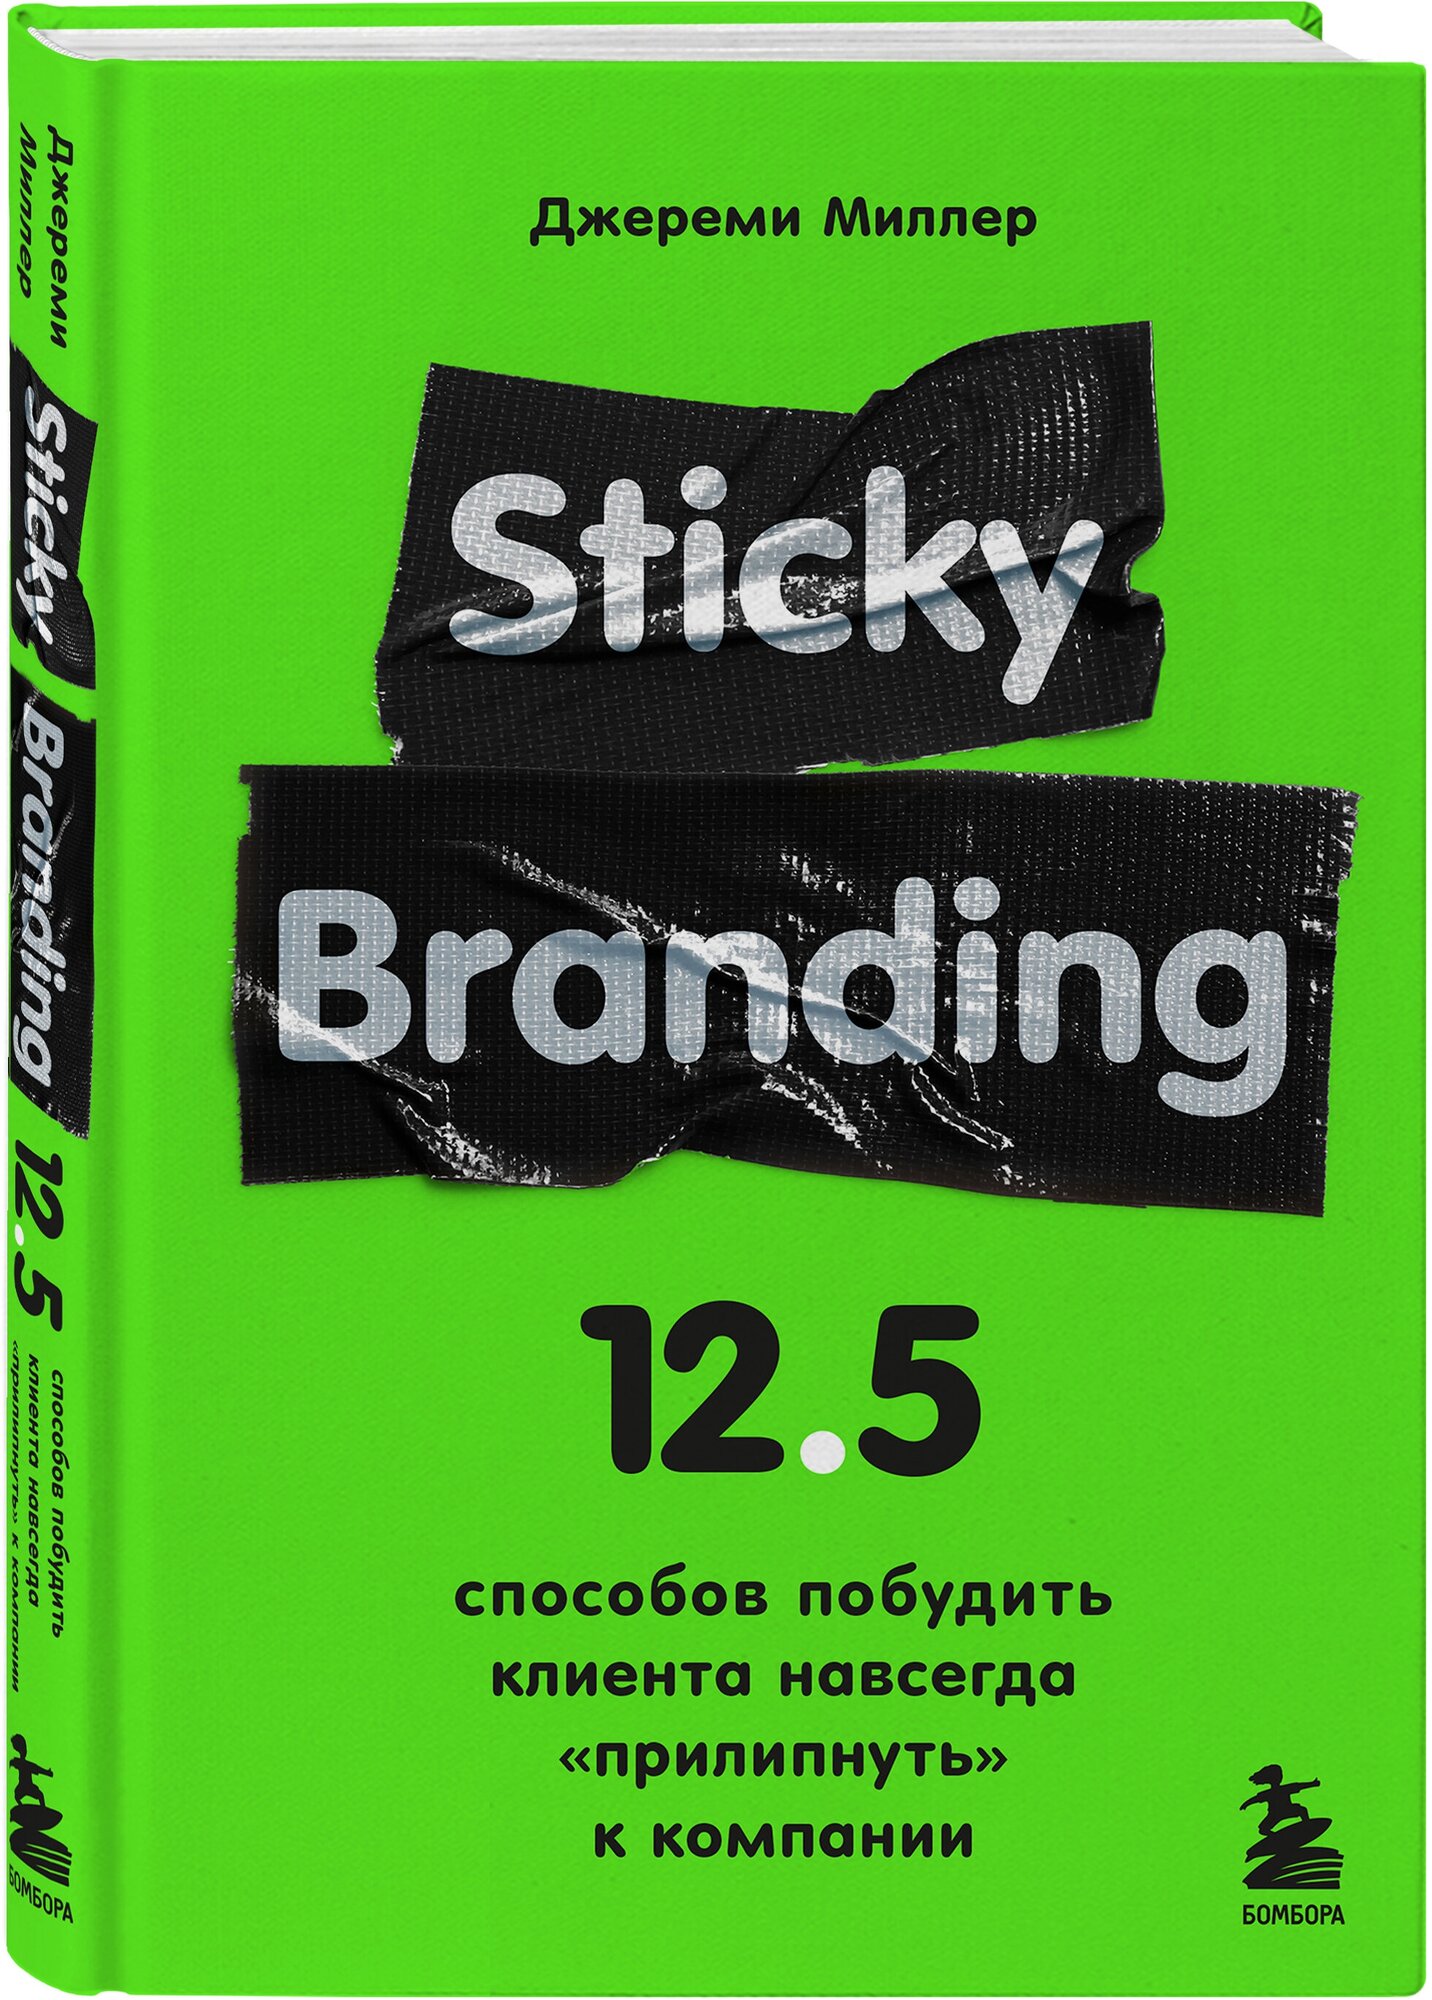 Миллер Д. Sticky Branding. 12,5 способов побудить клиента навсегда "прилипнуть" к компании